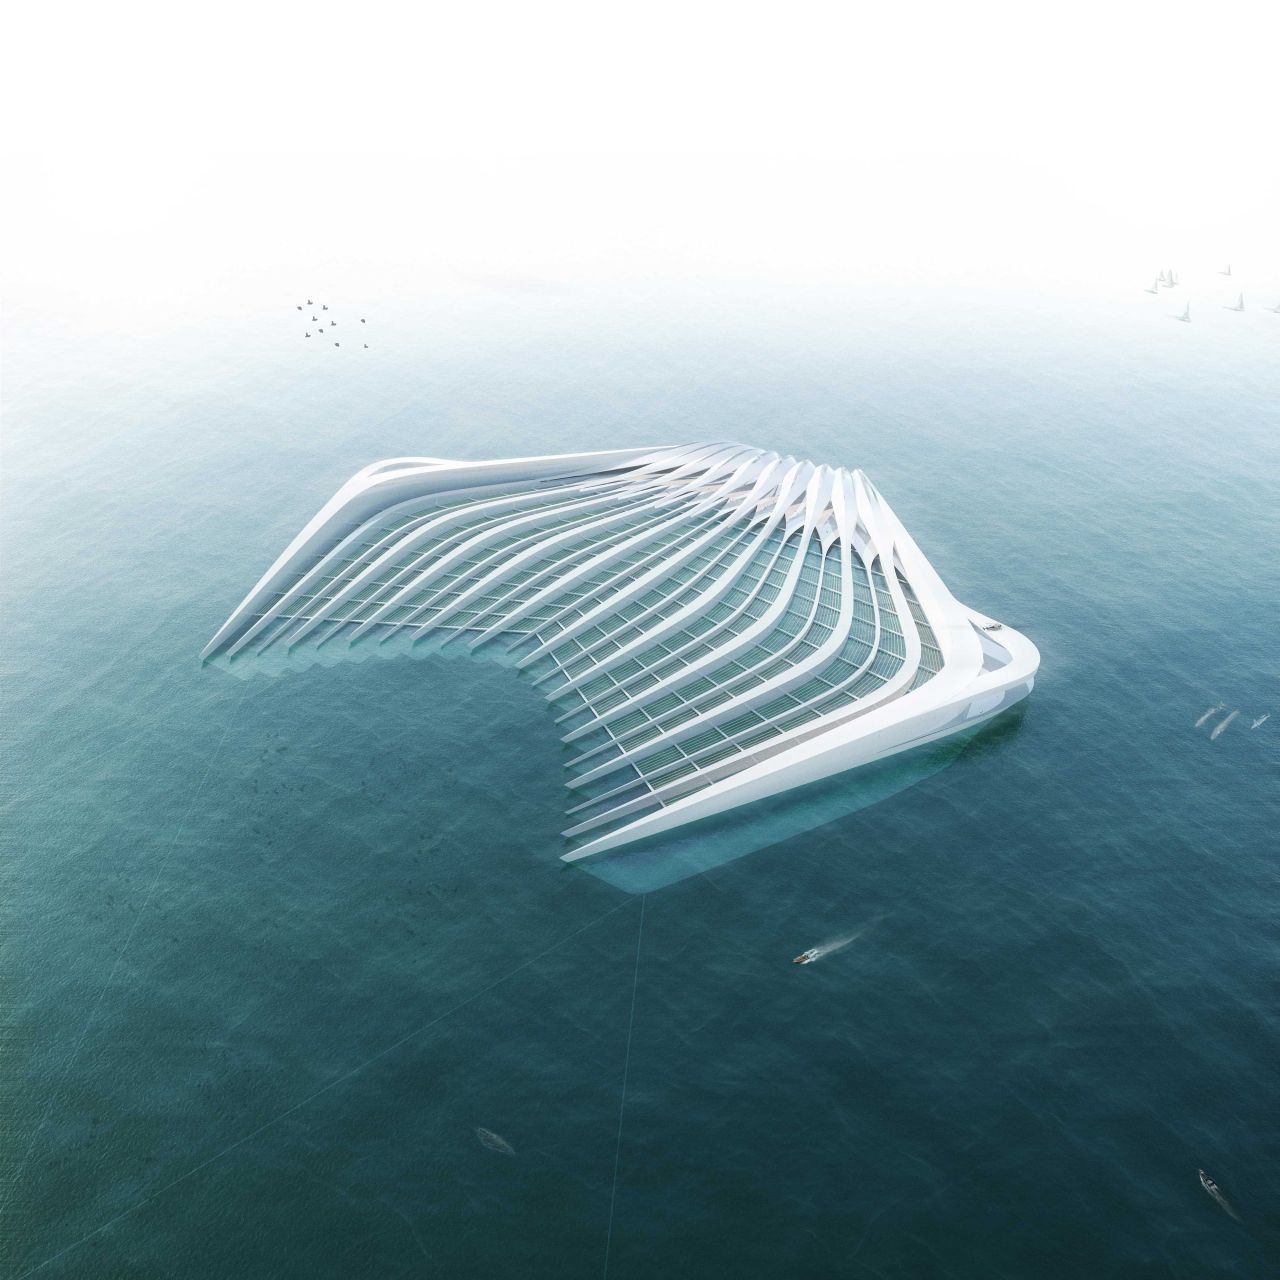 „Pacific Garbage Screening“ heißt das Projekt der deutschen Architektin Marcella Hansch. Ein Art riesiger Kamm, der die Strömung beeinflusst, soll Plastikpartikel aus den Ozeanen fischen. 